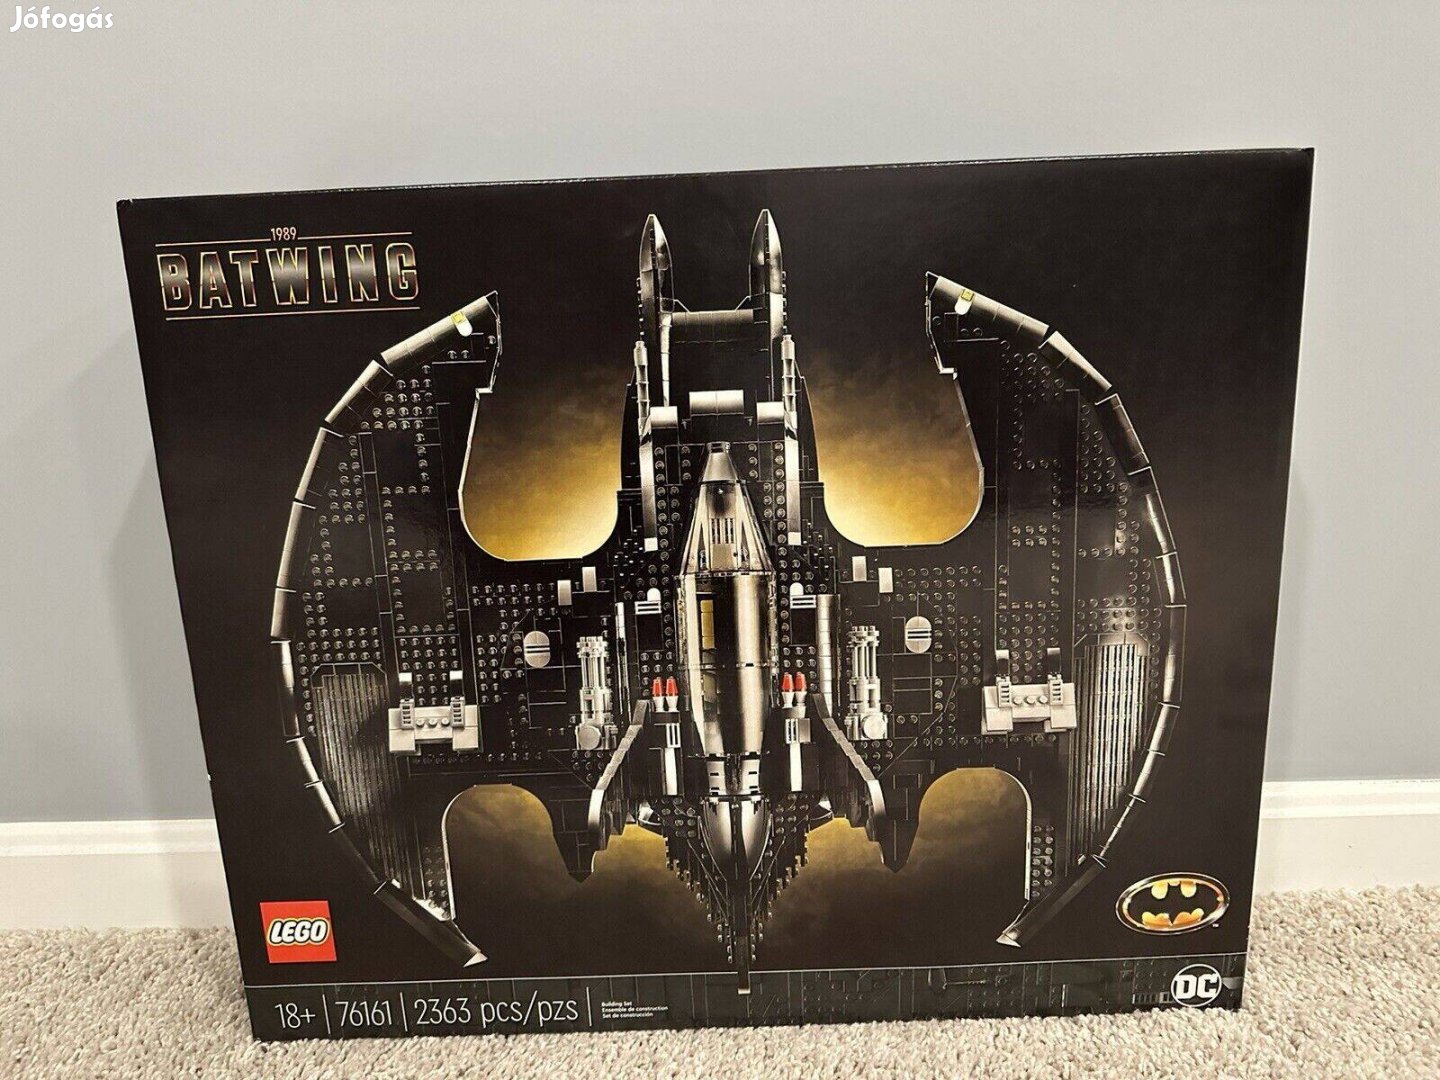 LEGO Batman 76161 - Denevérszárny 1989 Batwing új, bontatlan